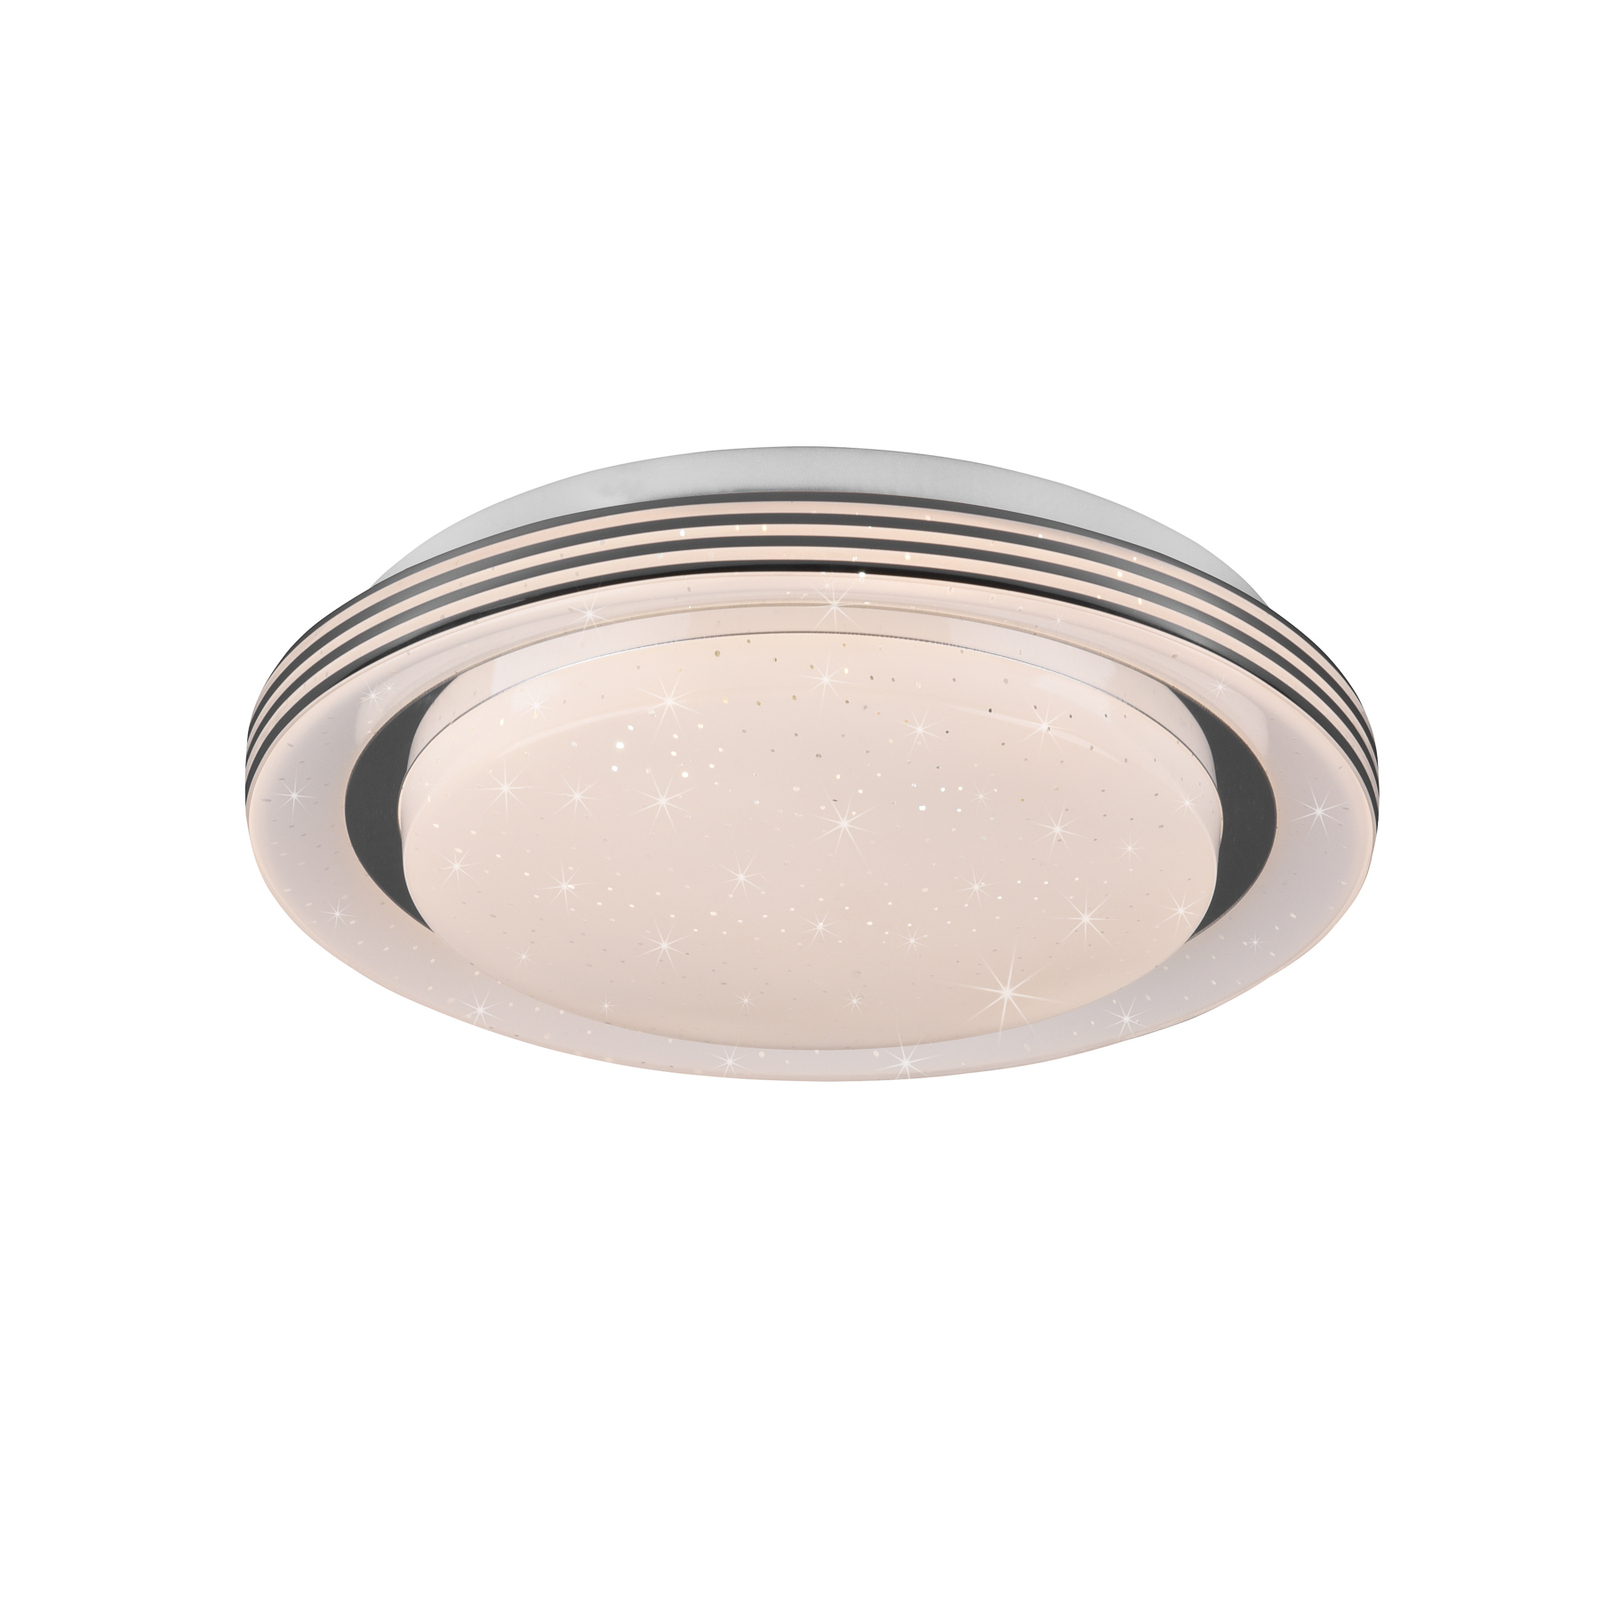 LED ceiling lamp Atria, Ø 27 cm, white, plastic, CCT